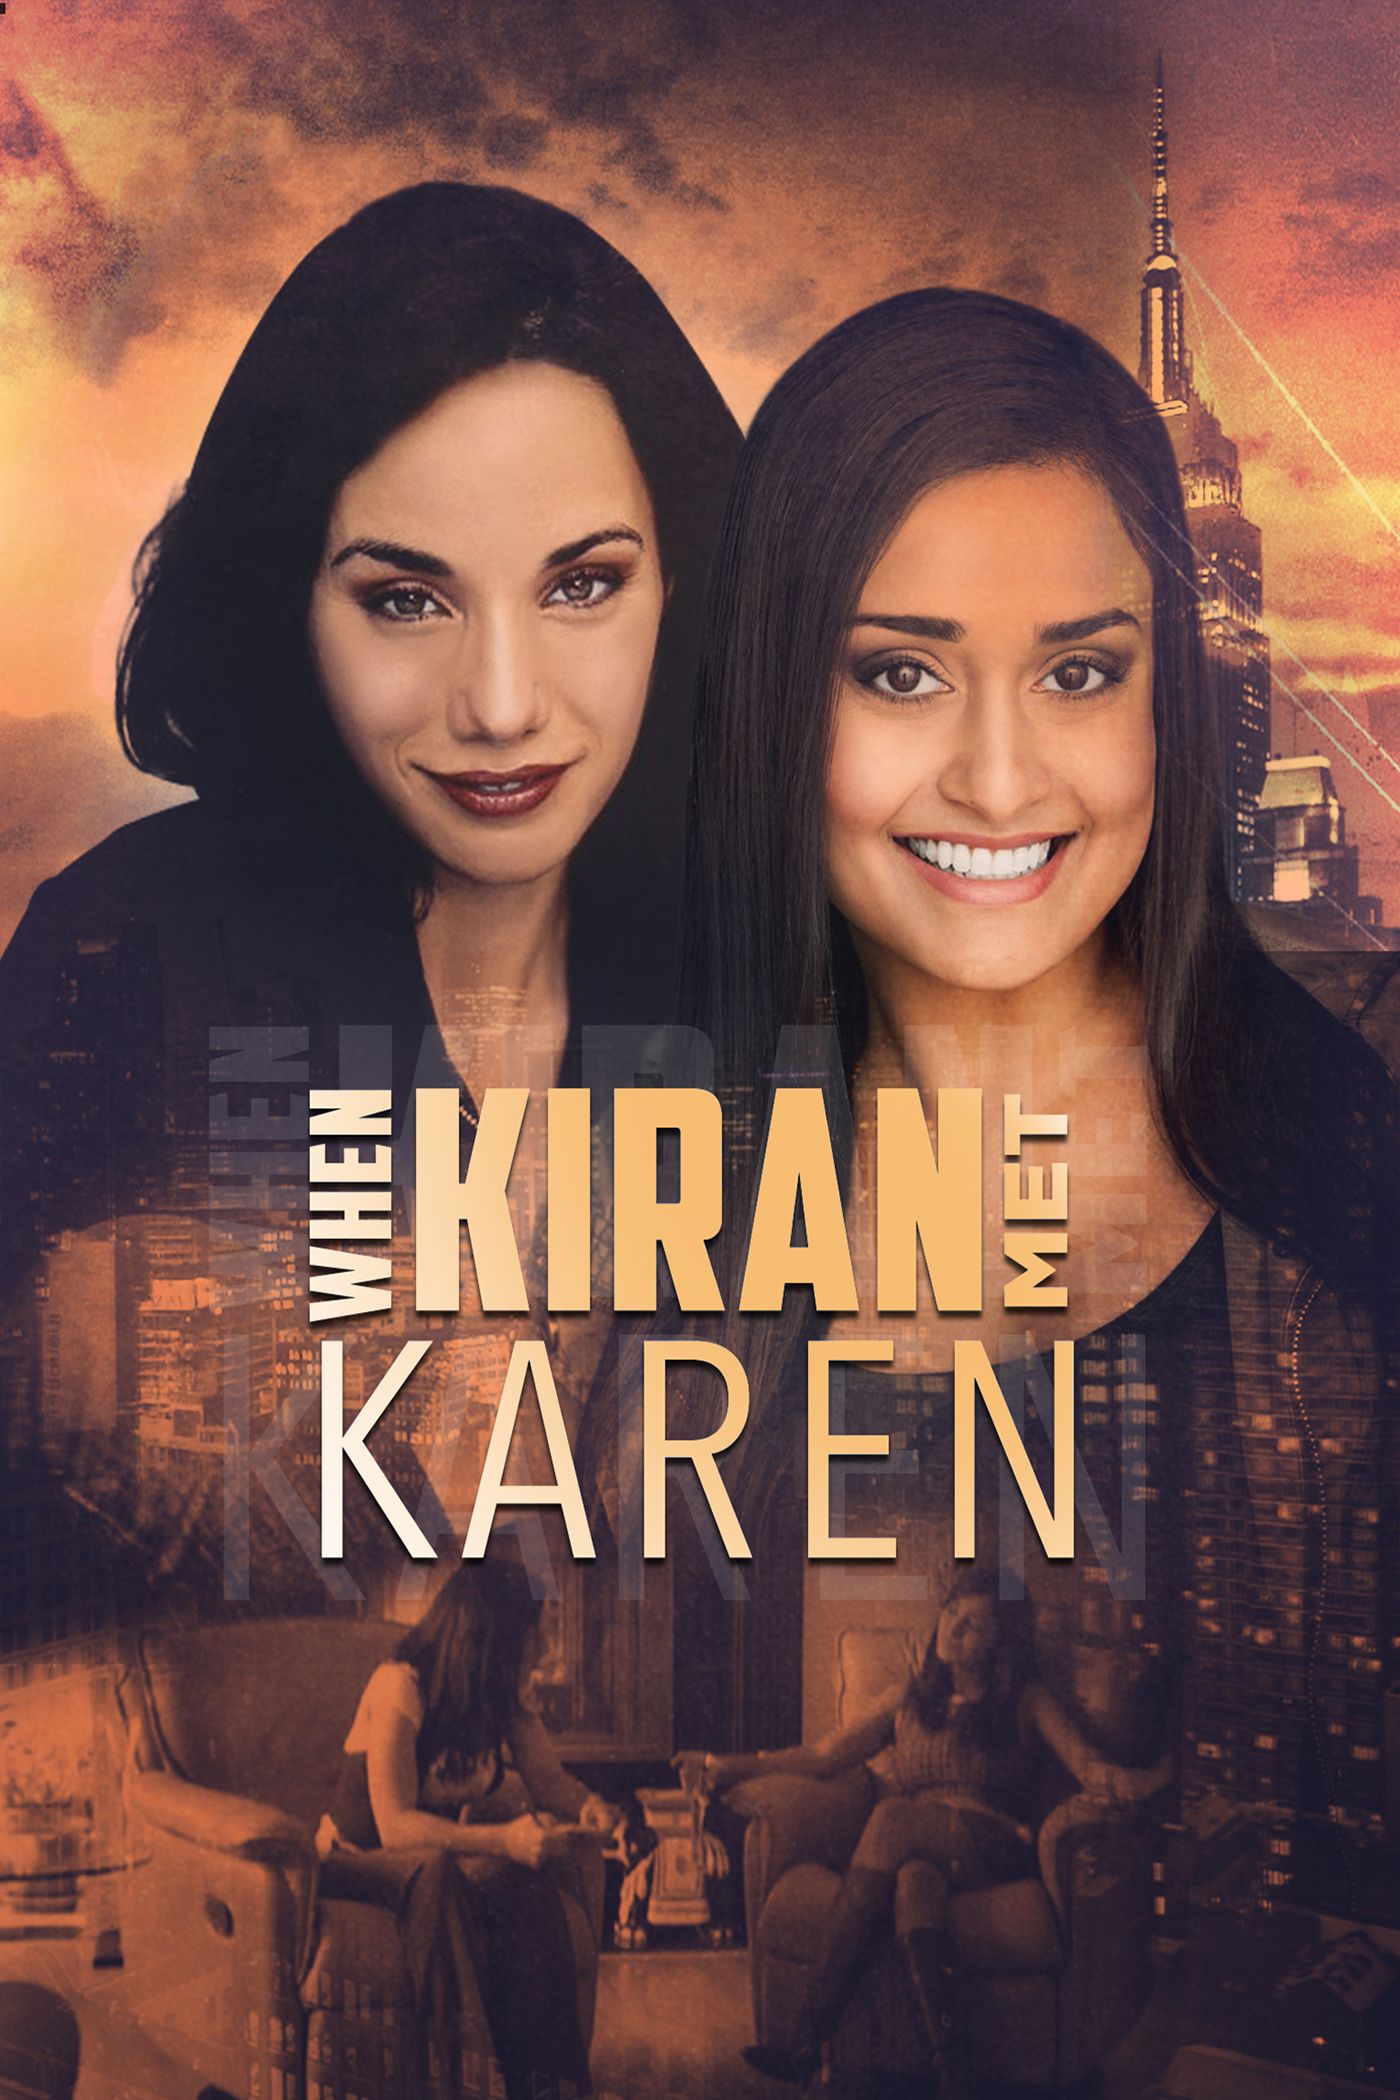 When Kiran Met Karen